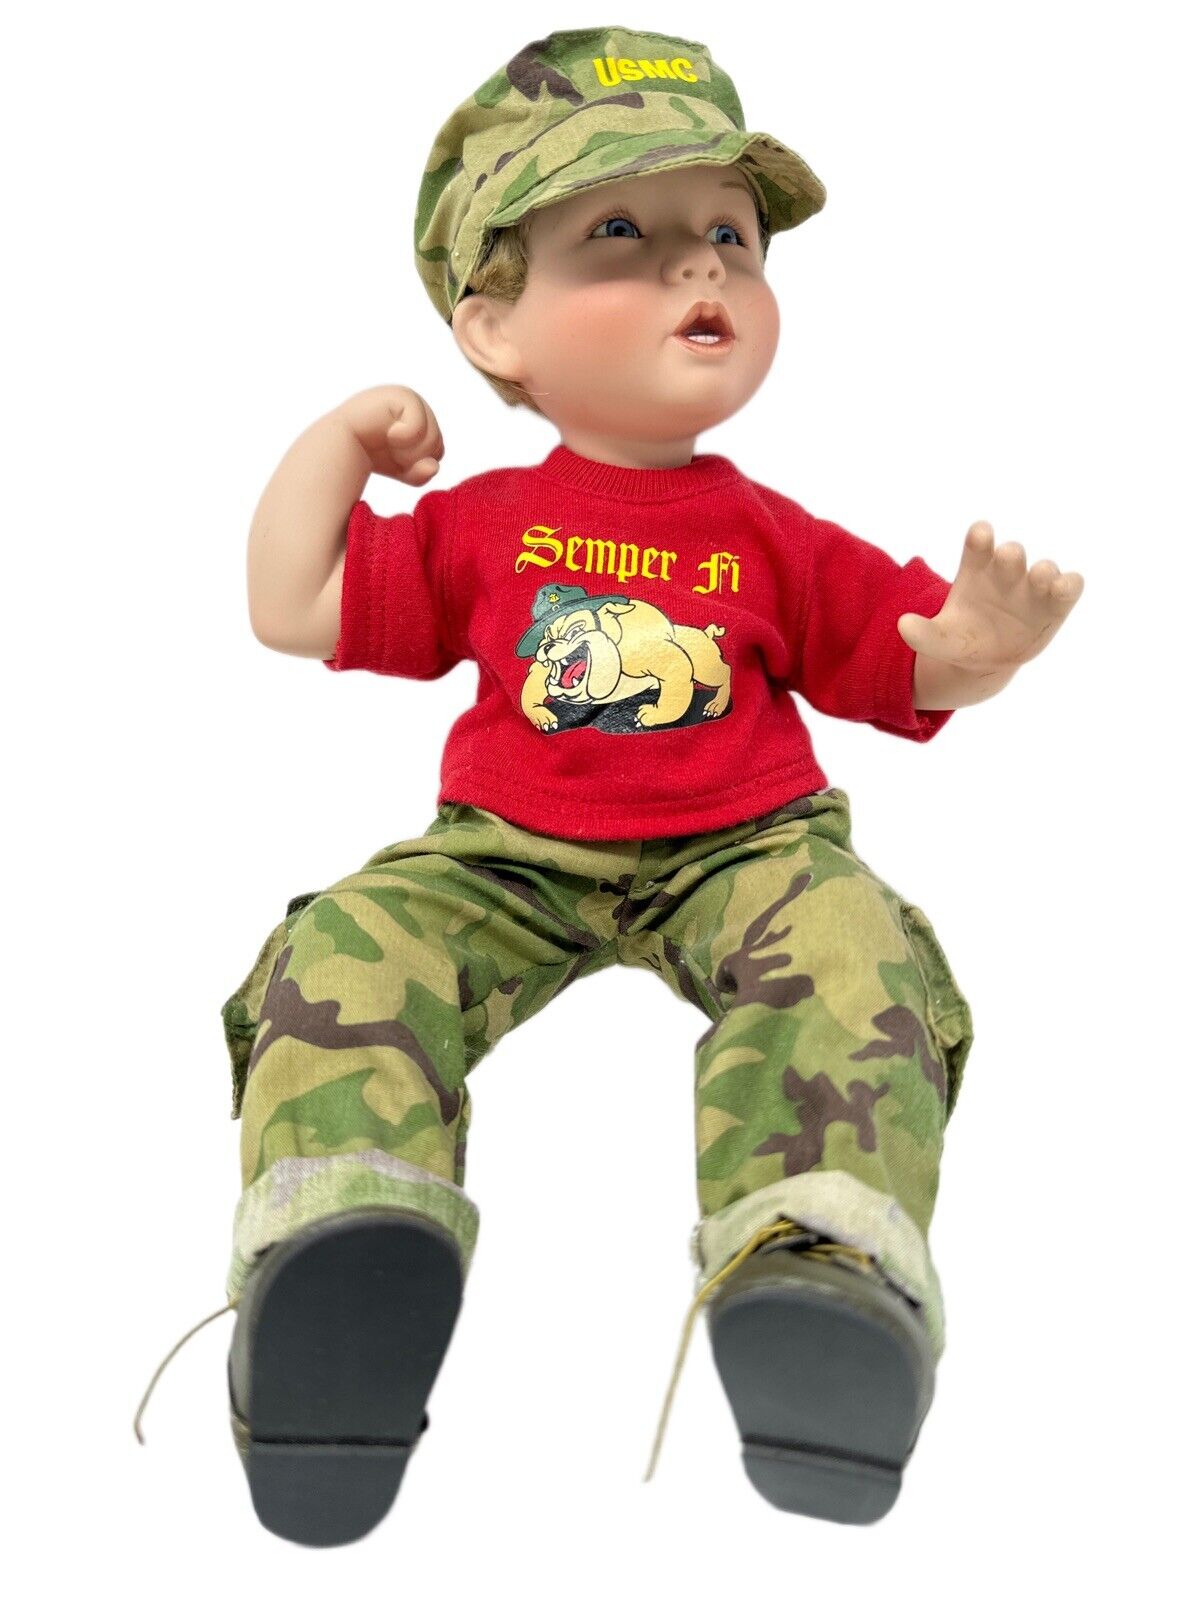 Ashton Drake Galleries USMC Boy Doll Porcelain Semper Fi Military Retired Item